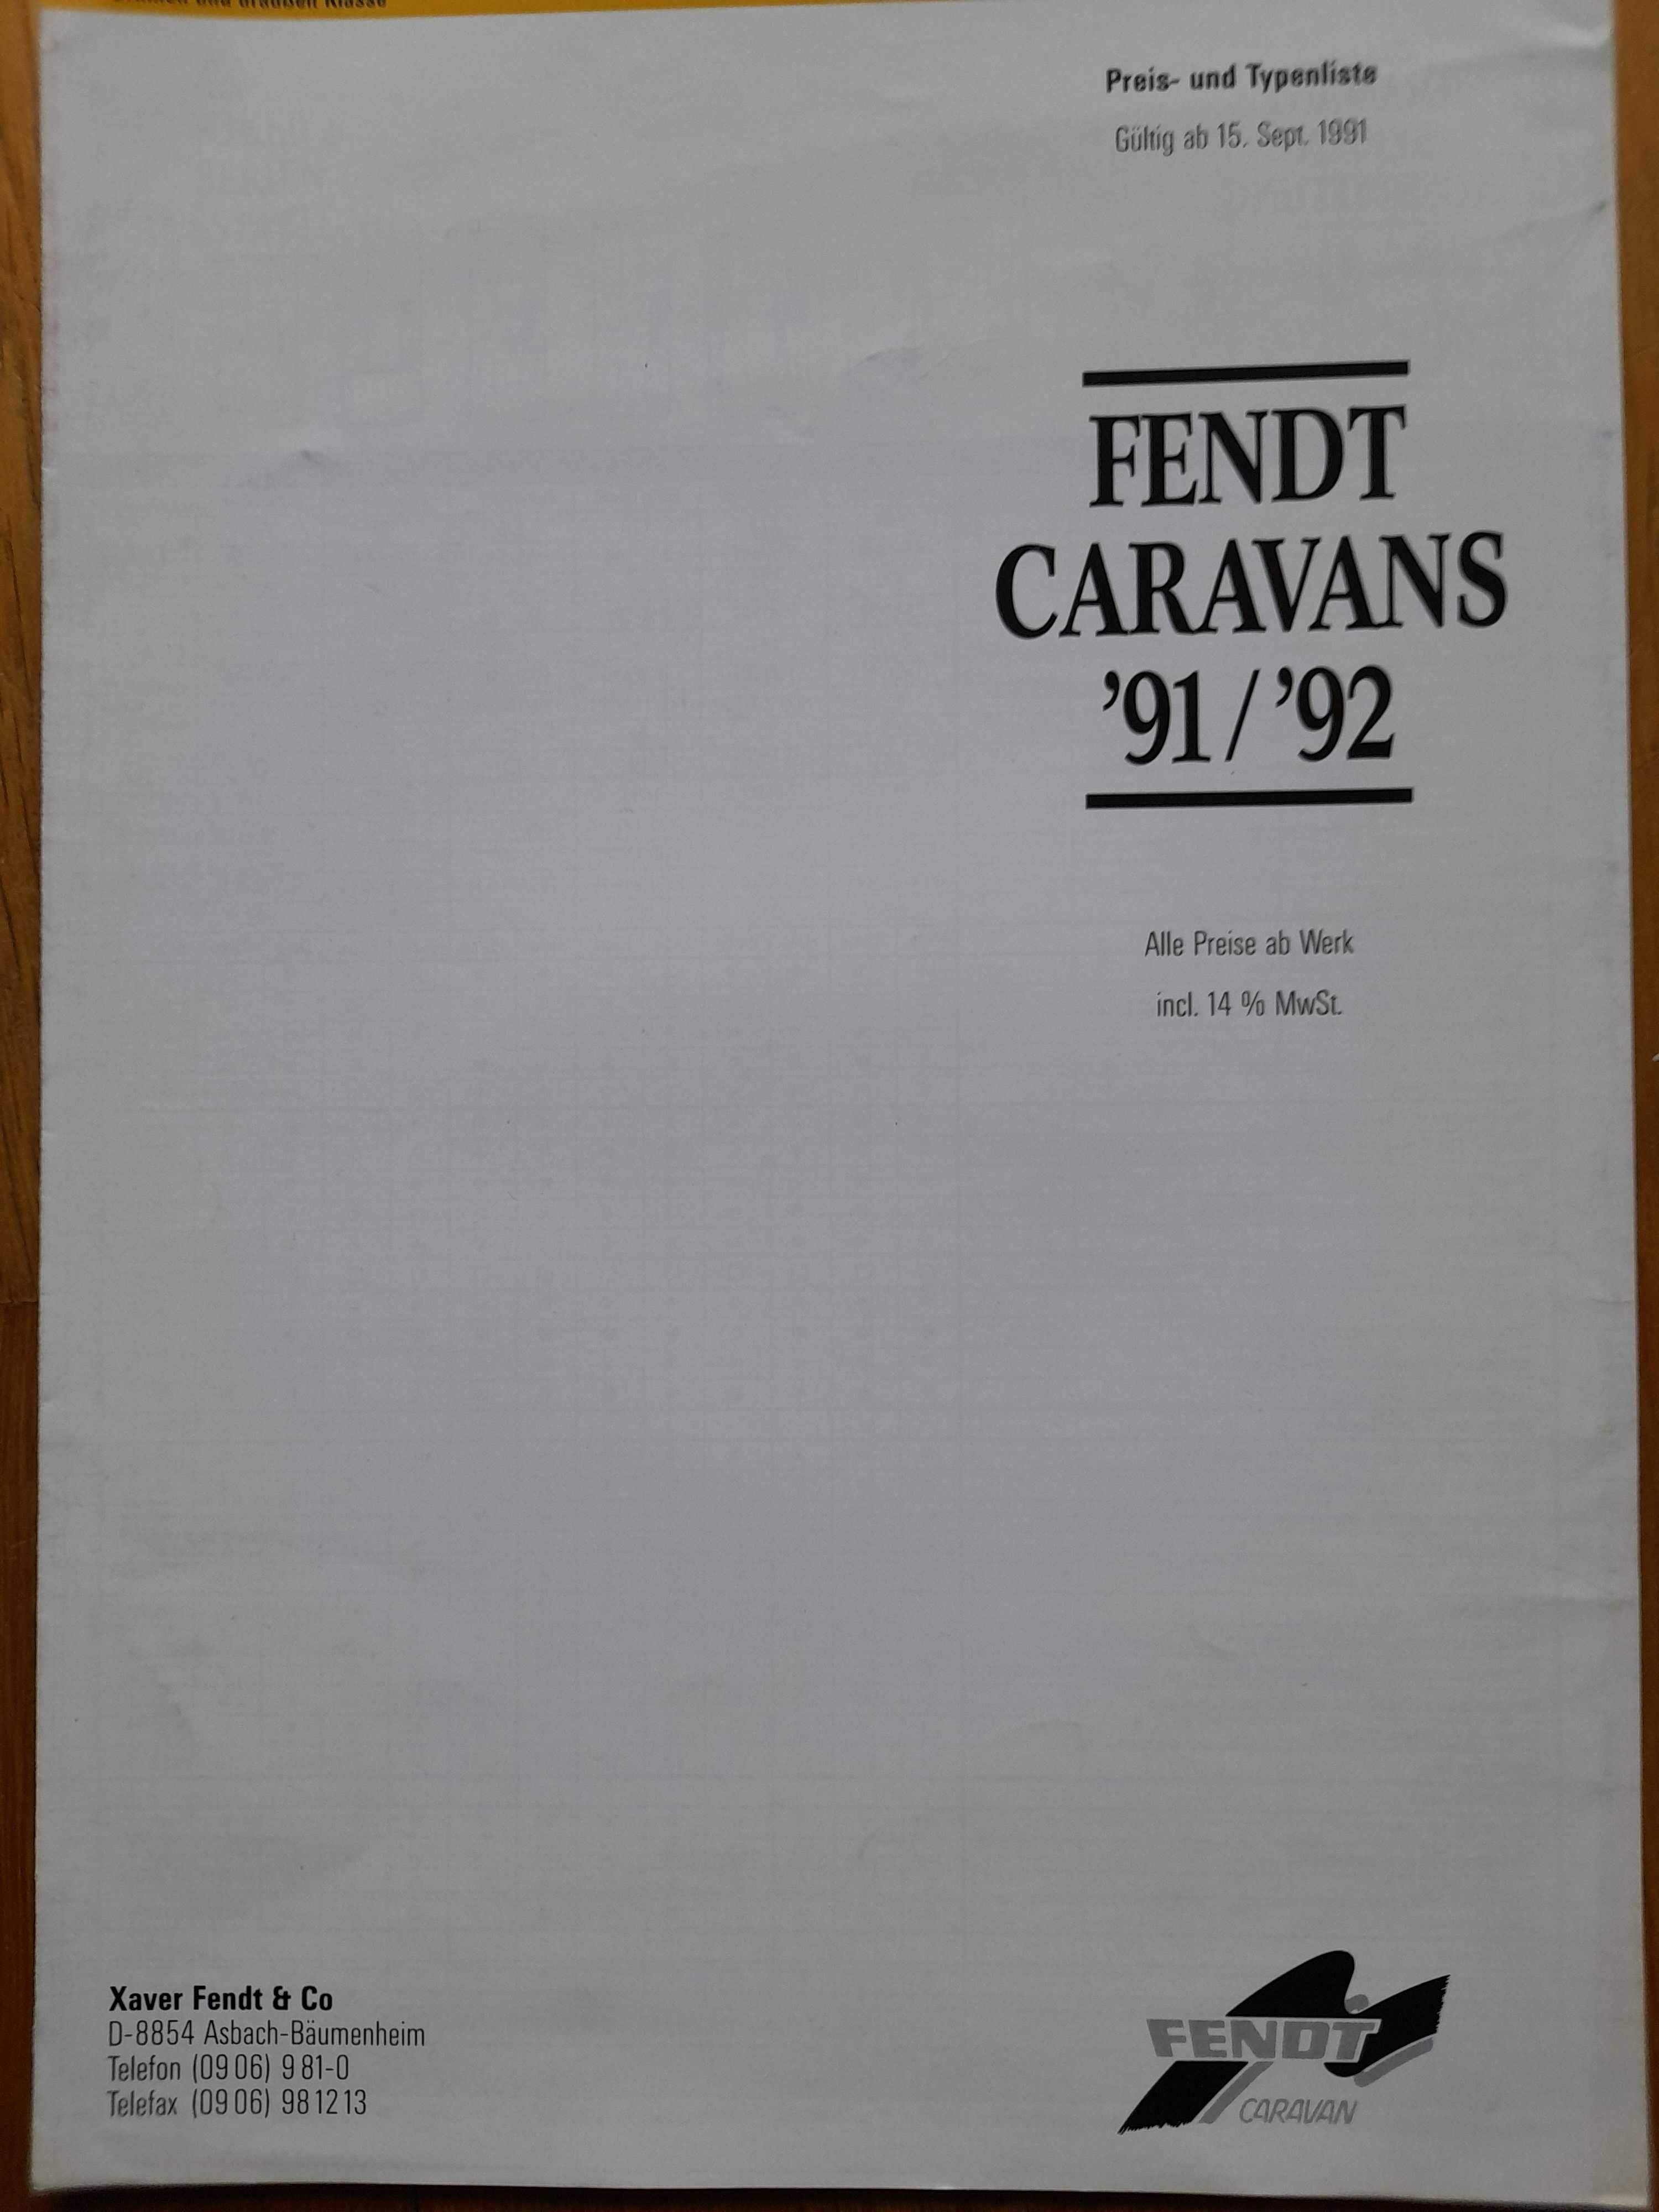 FENDT Caravans 91/92 kampery serii Diamant, Joker prospekt niemiecki